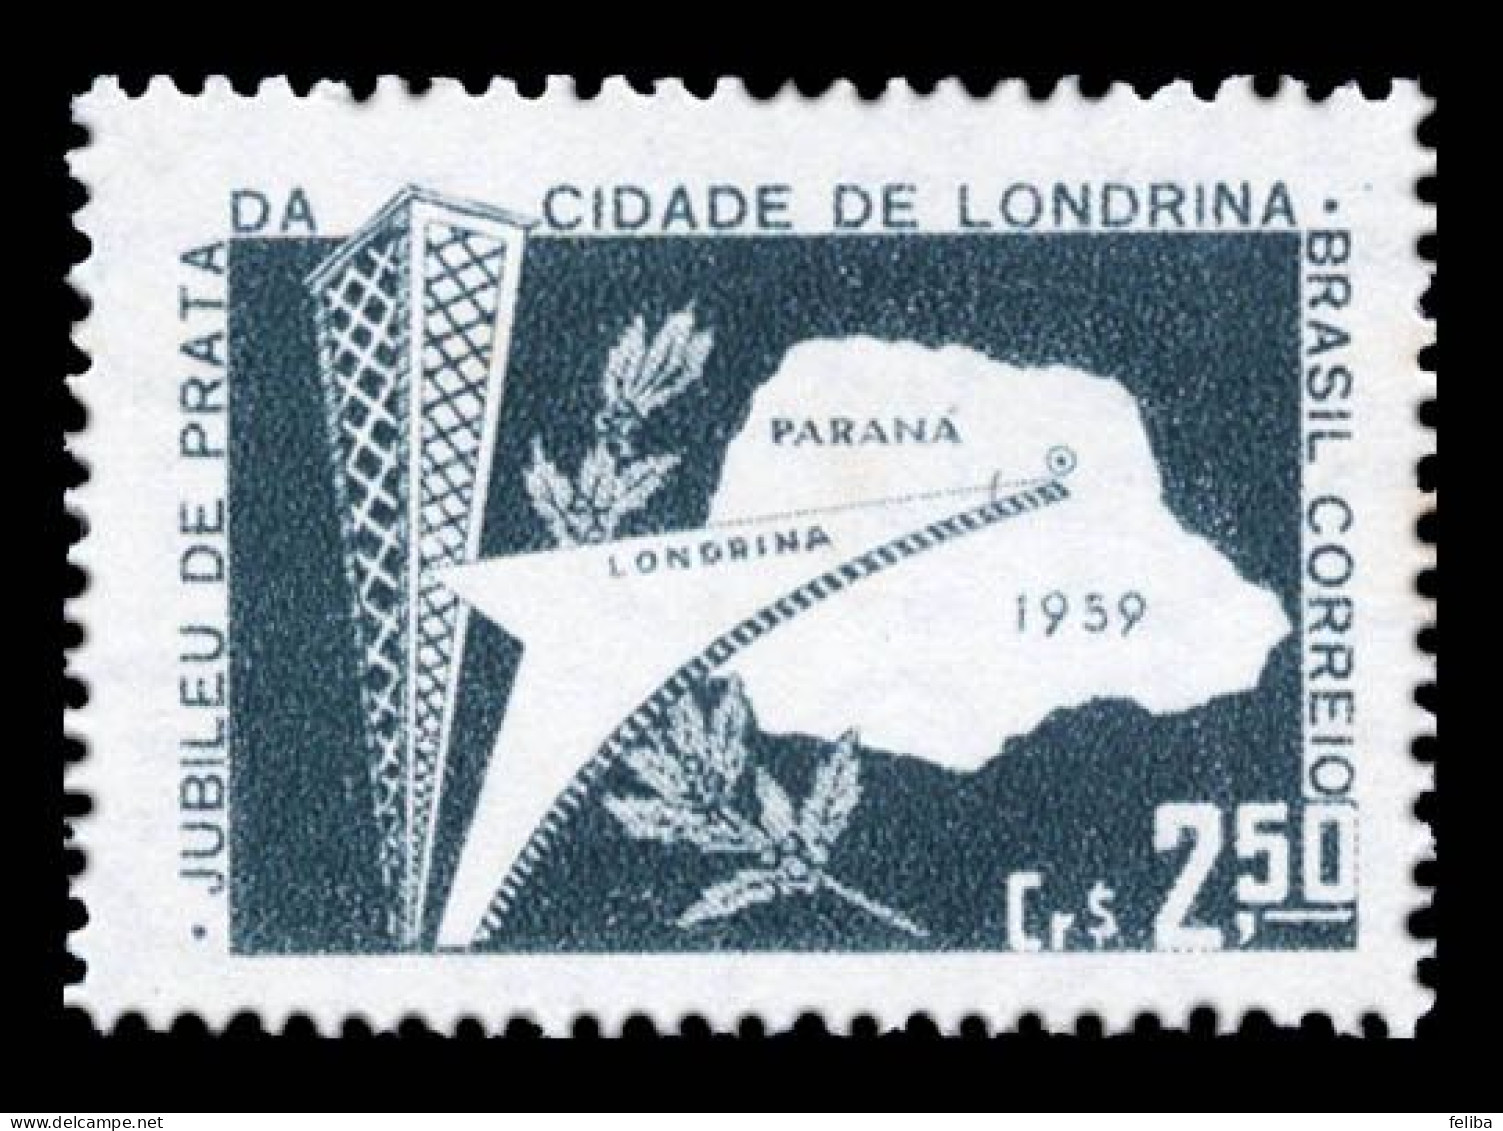 Brazil 1959 Unused - Ungebraucht